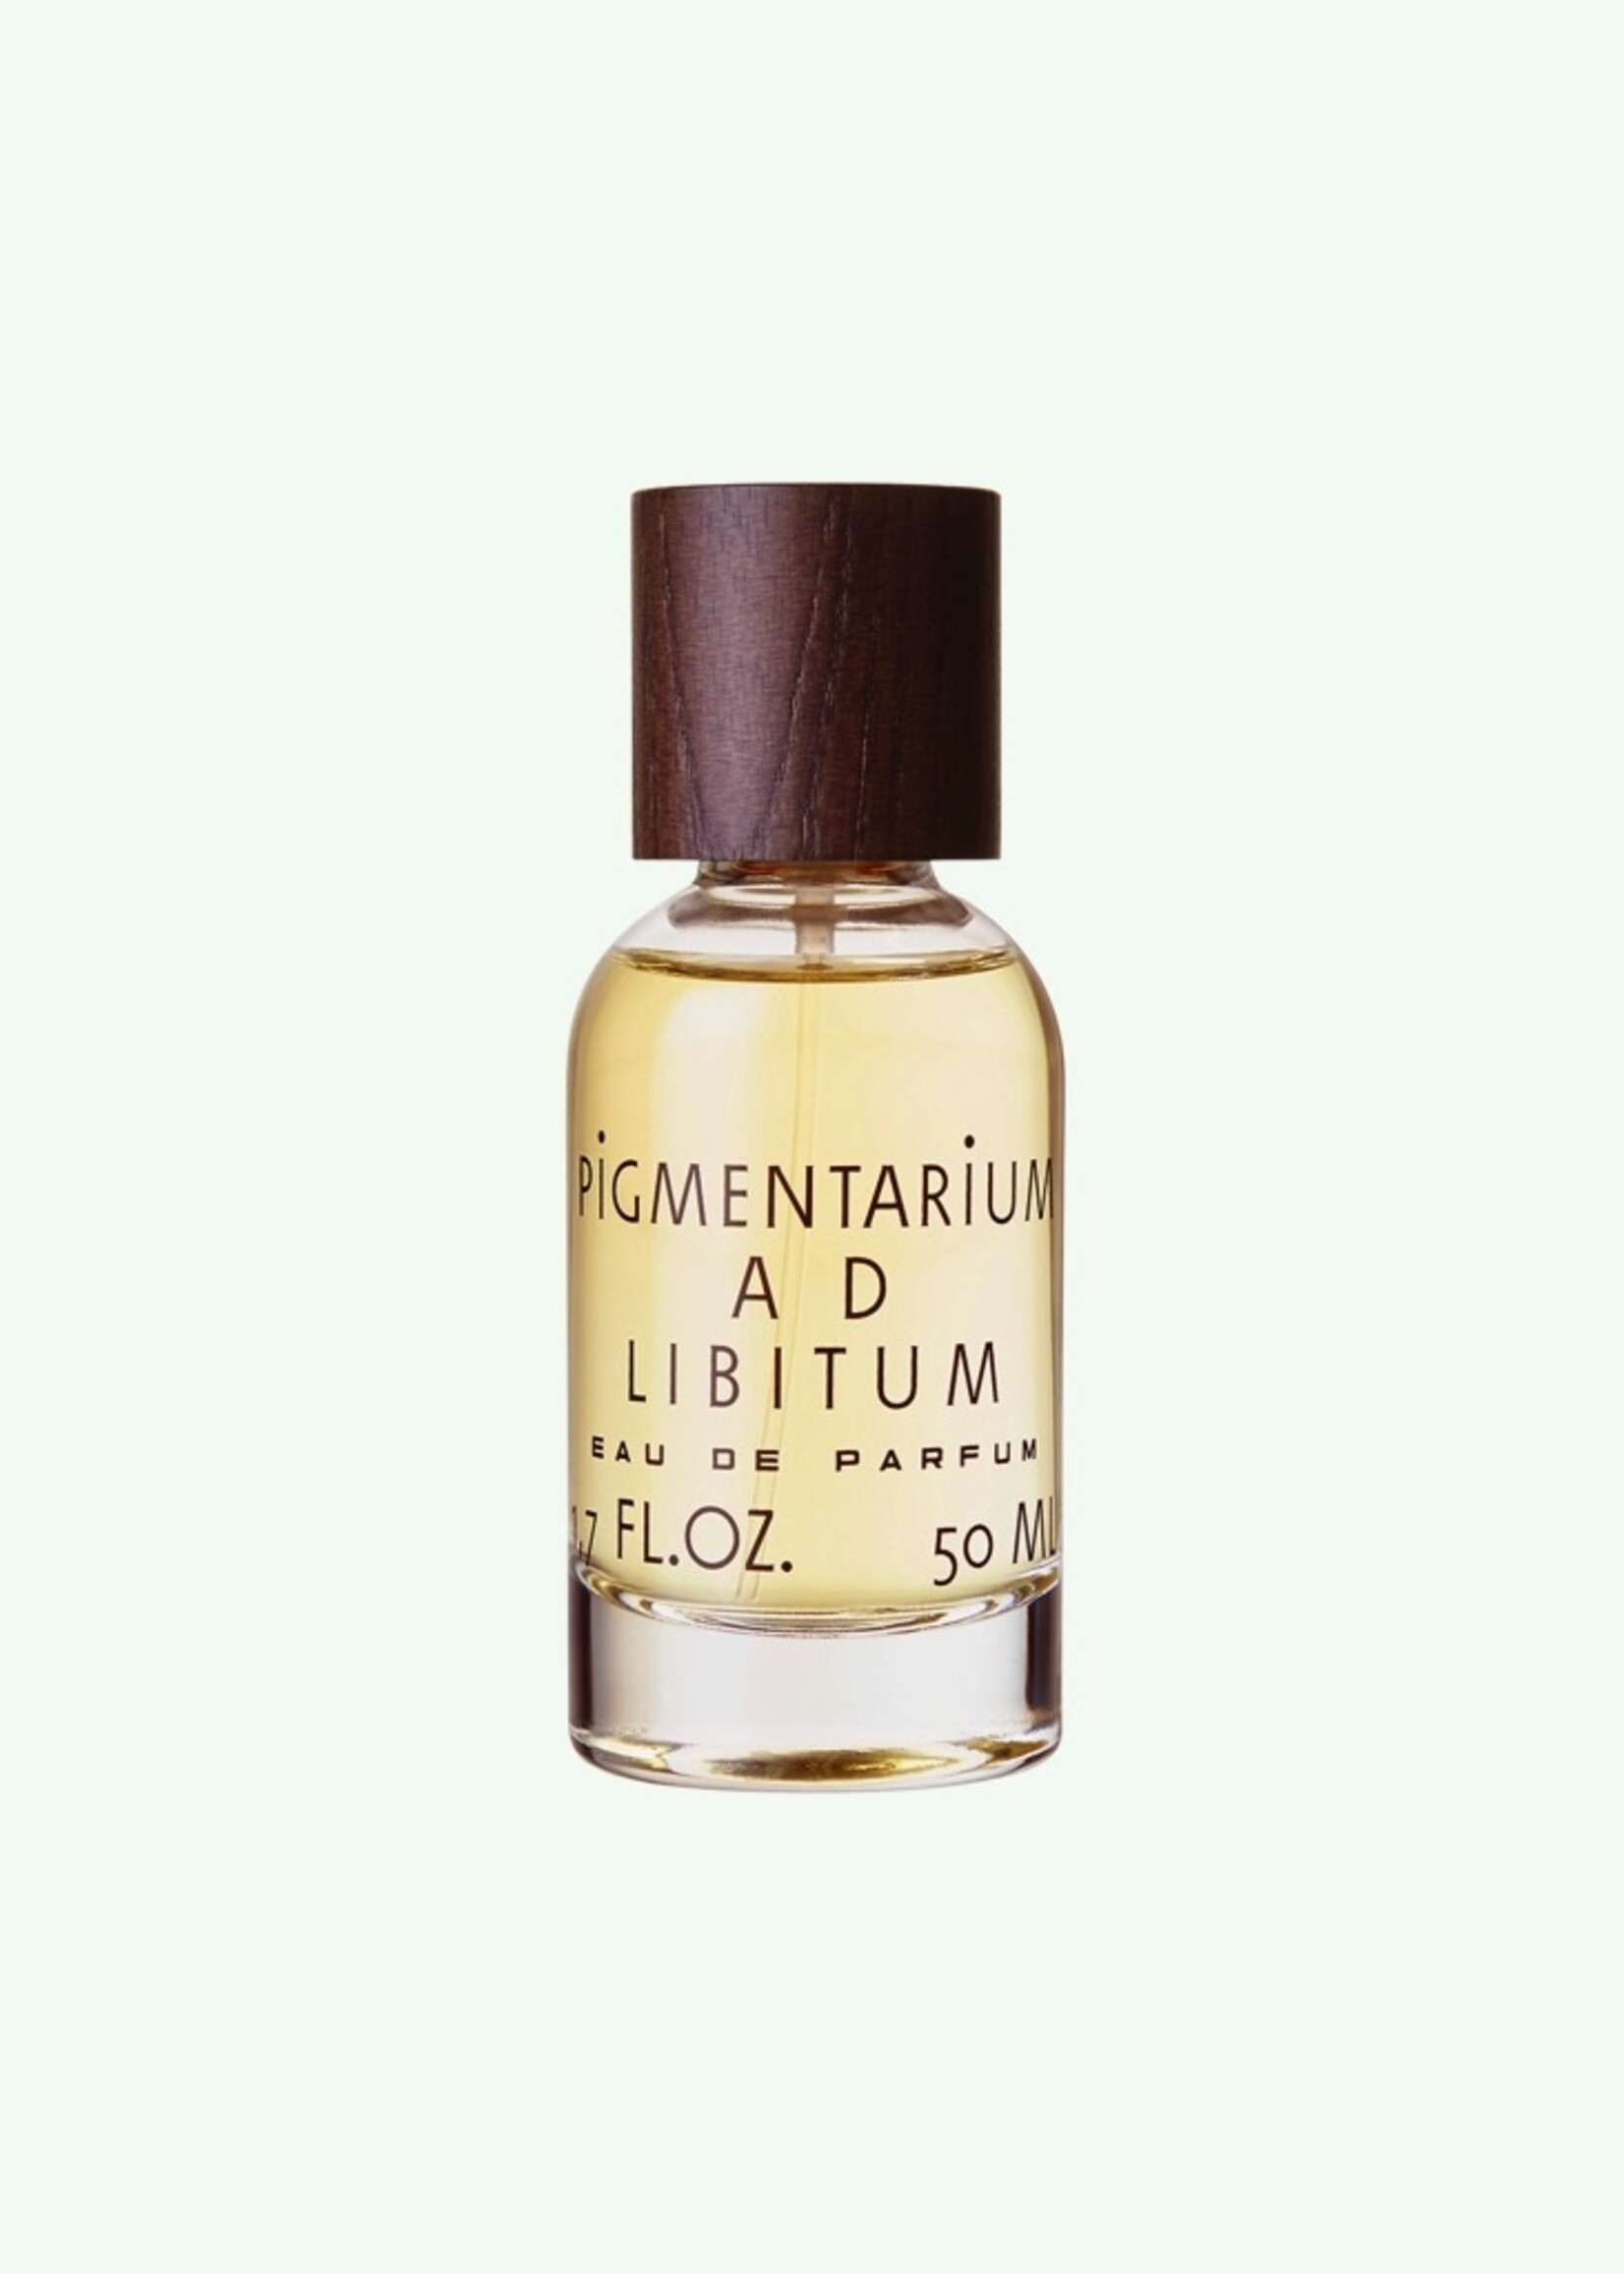 Pigmentarium AD LIBITUM - Eau de Parfum